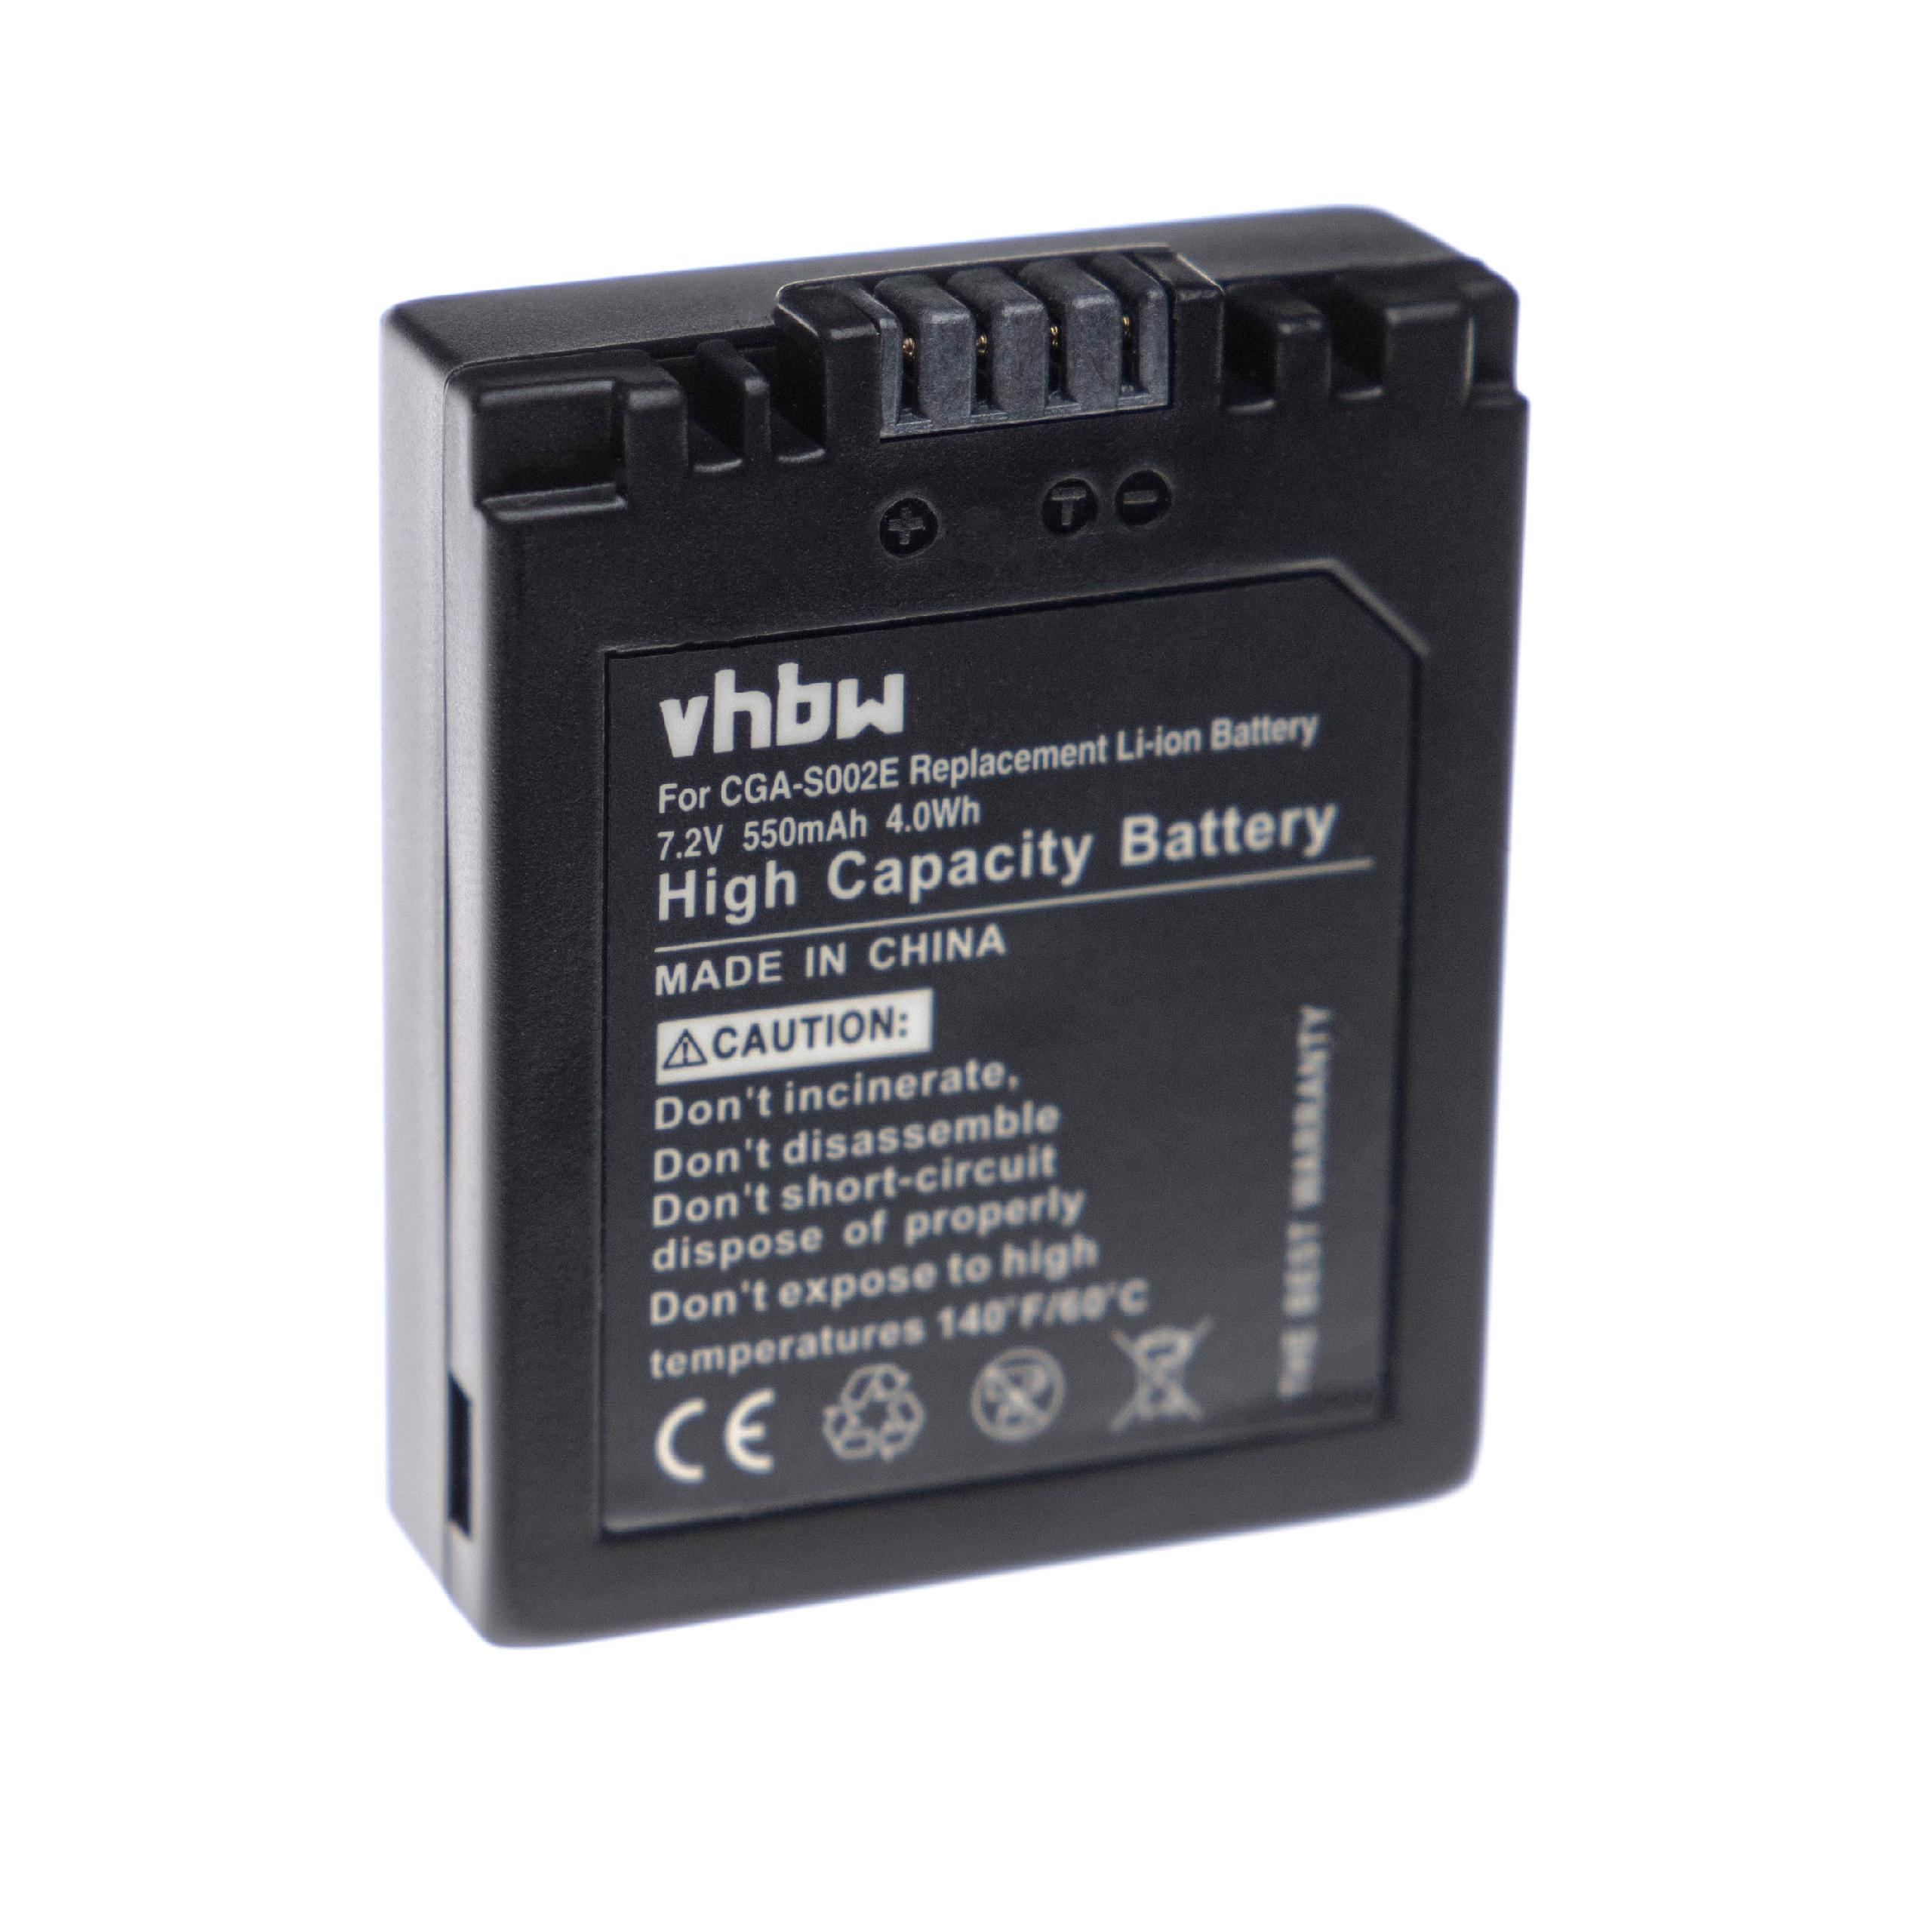 Akku VHBW Li-Ion Kamera, Ersatz Panasonic für CGR-S002A, 550 für DMW-BM7 -